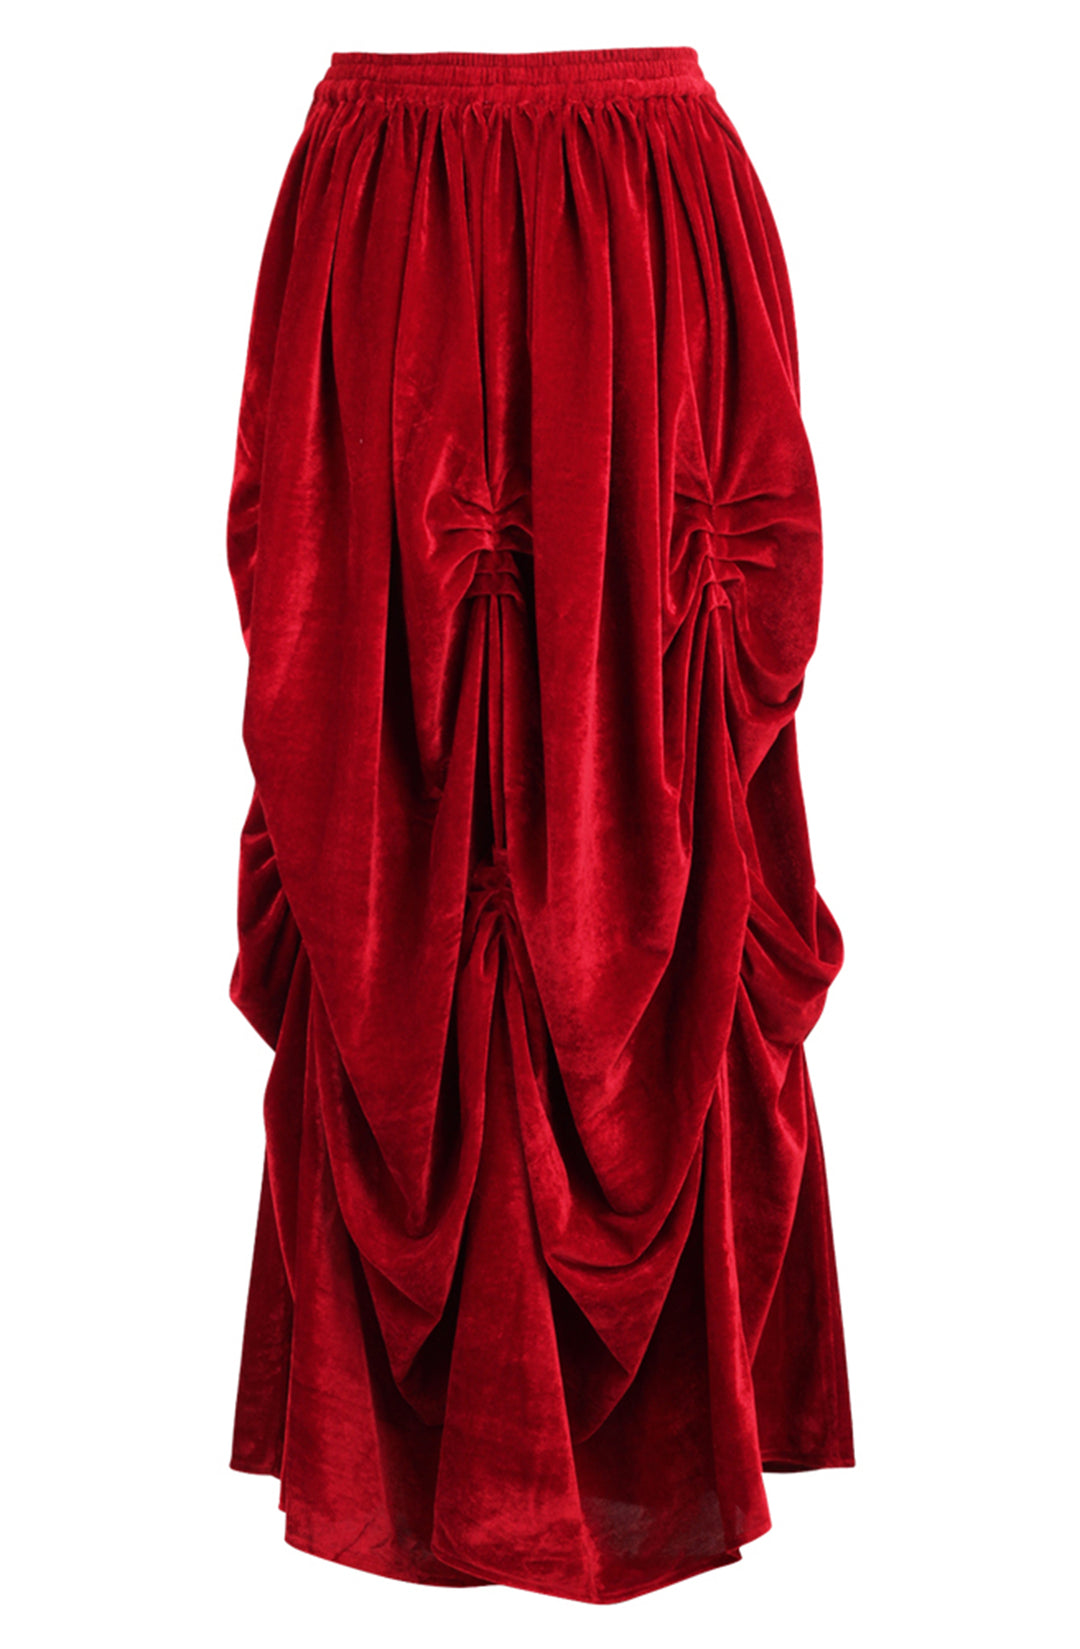 Scarlet Velvet Red Ball Gown Skirt 2